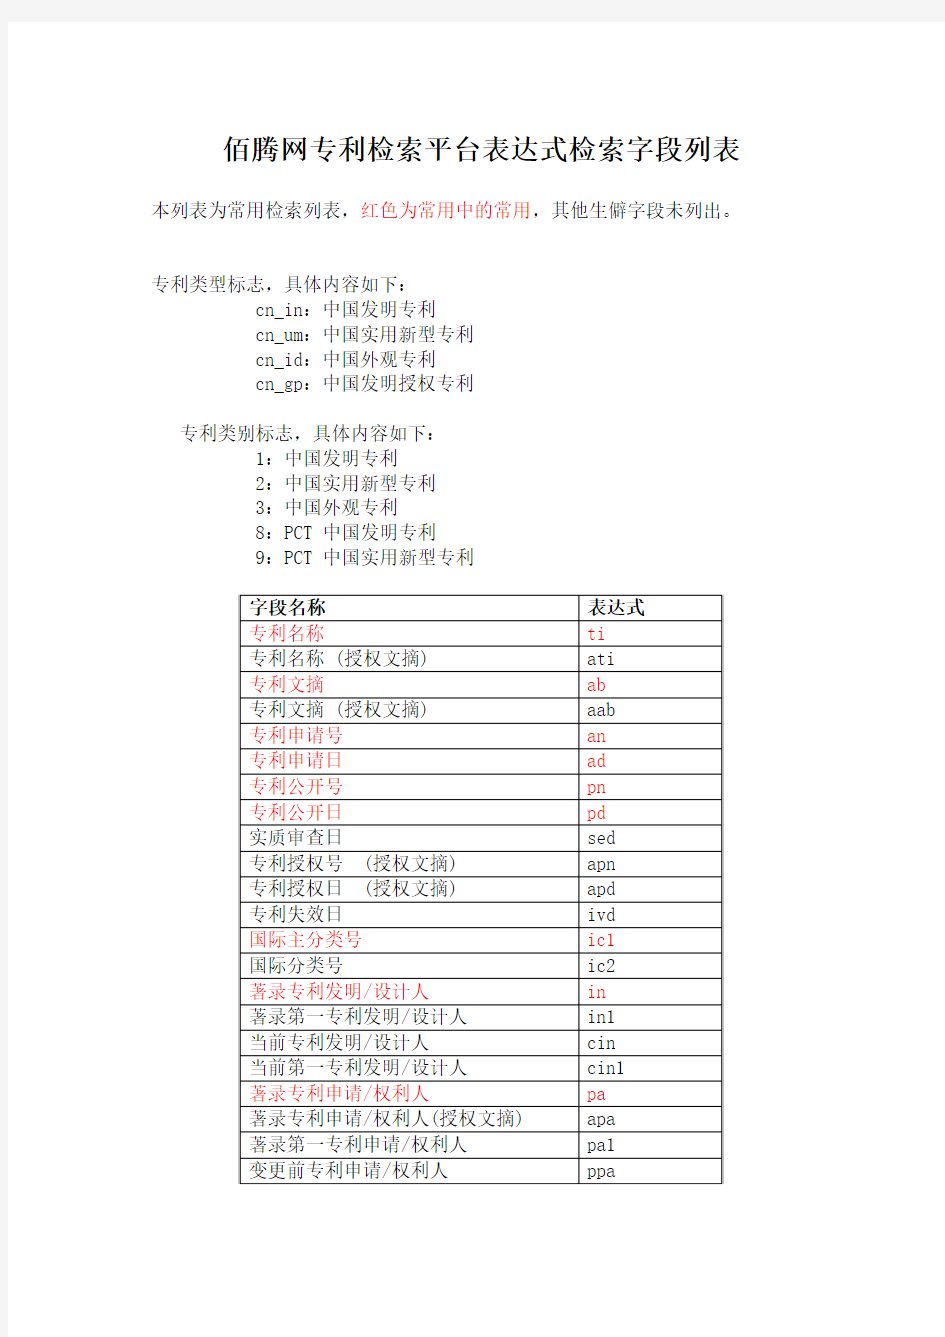 佰腾网专利检索平台表达式检索字段列表